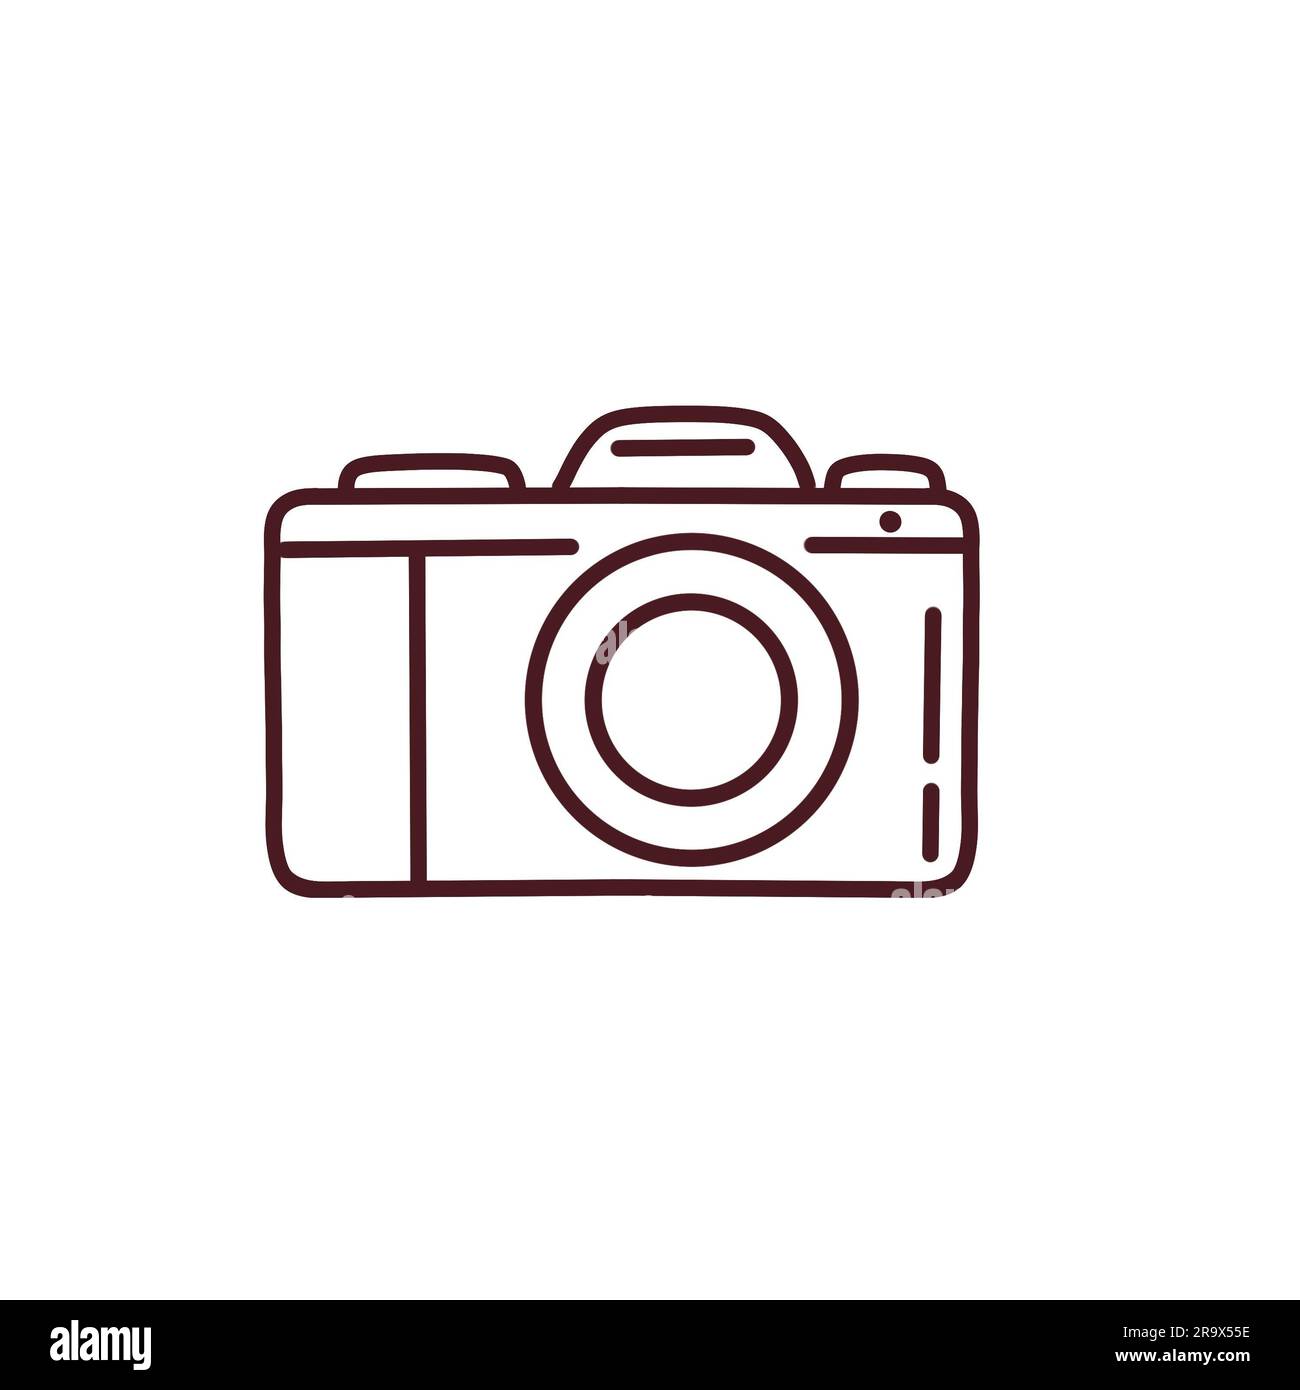 Fotocamera. Icona fotocamera. Icona per storie, siti e altri social network di Instagram. Foto Stock